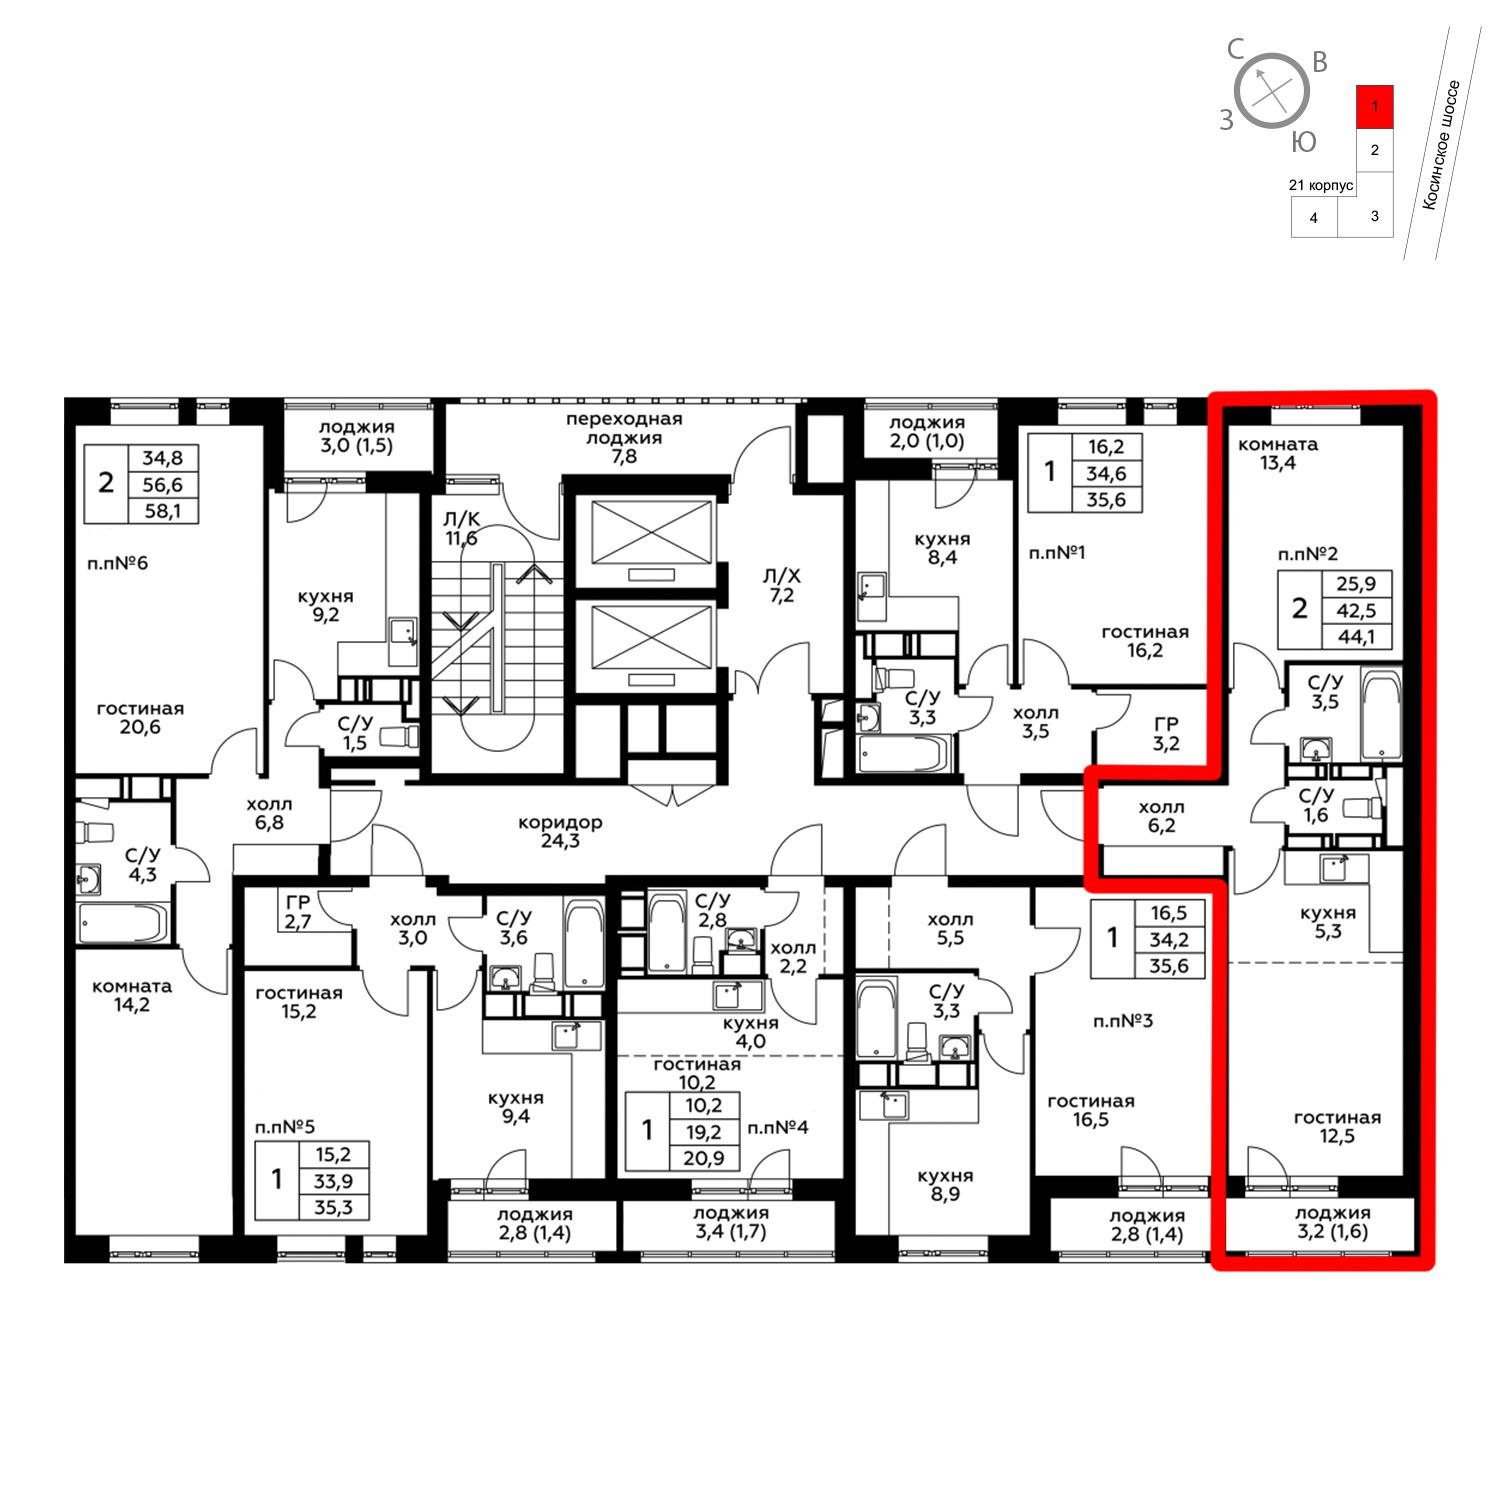 Продаётся 2-комнатная квартира в новостройке 44.1 кв.м. этаж 11/20 за 5 576 445 руб 